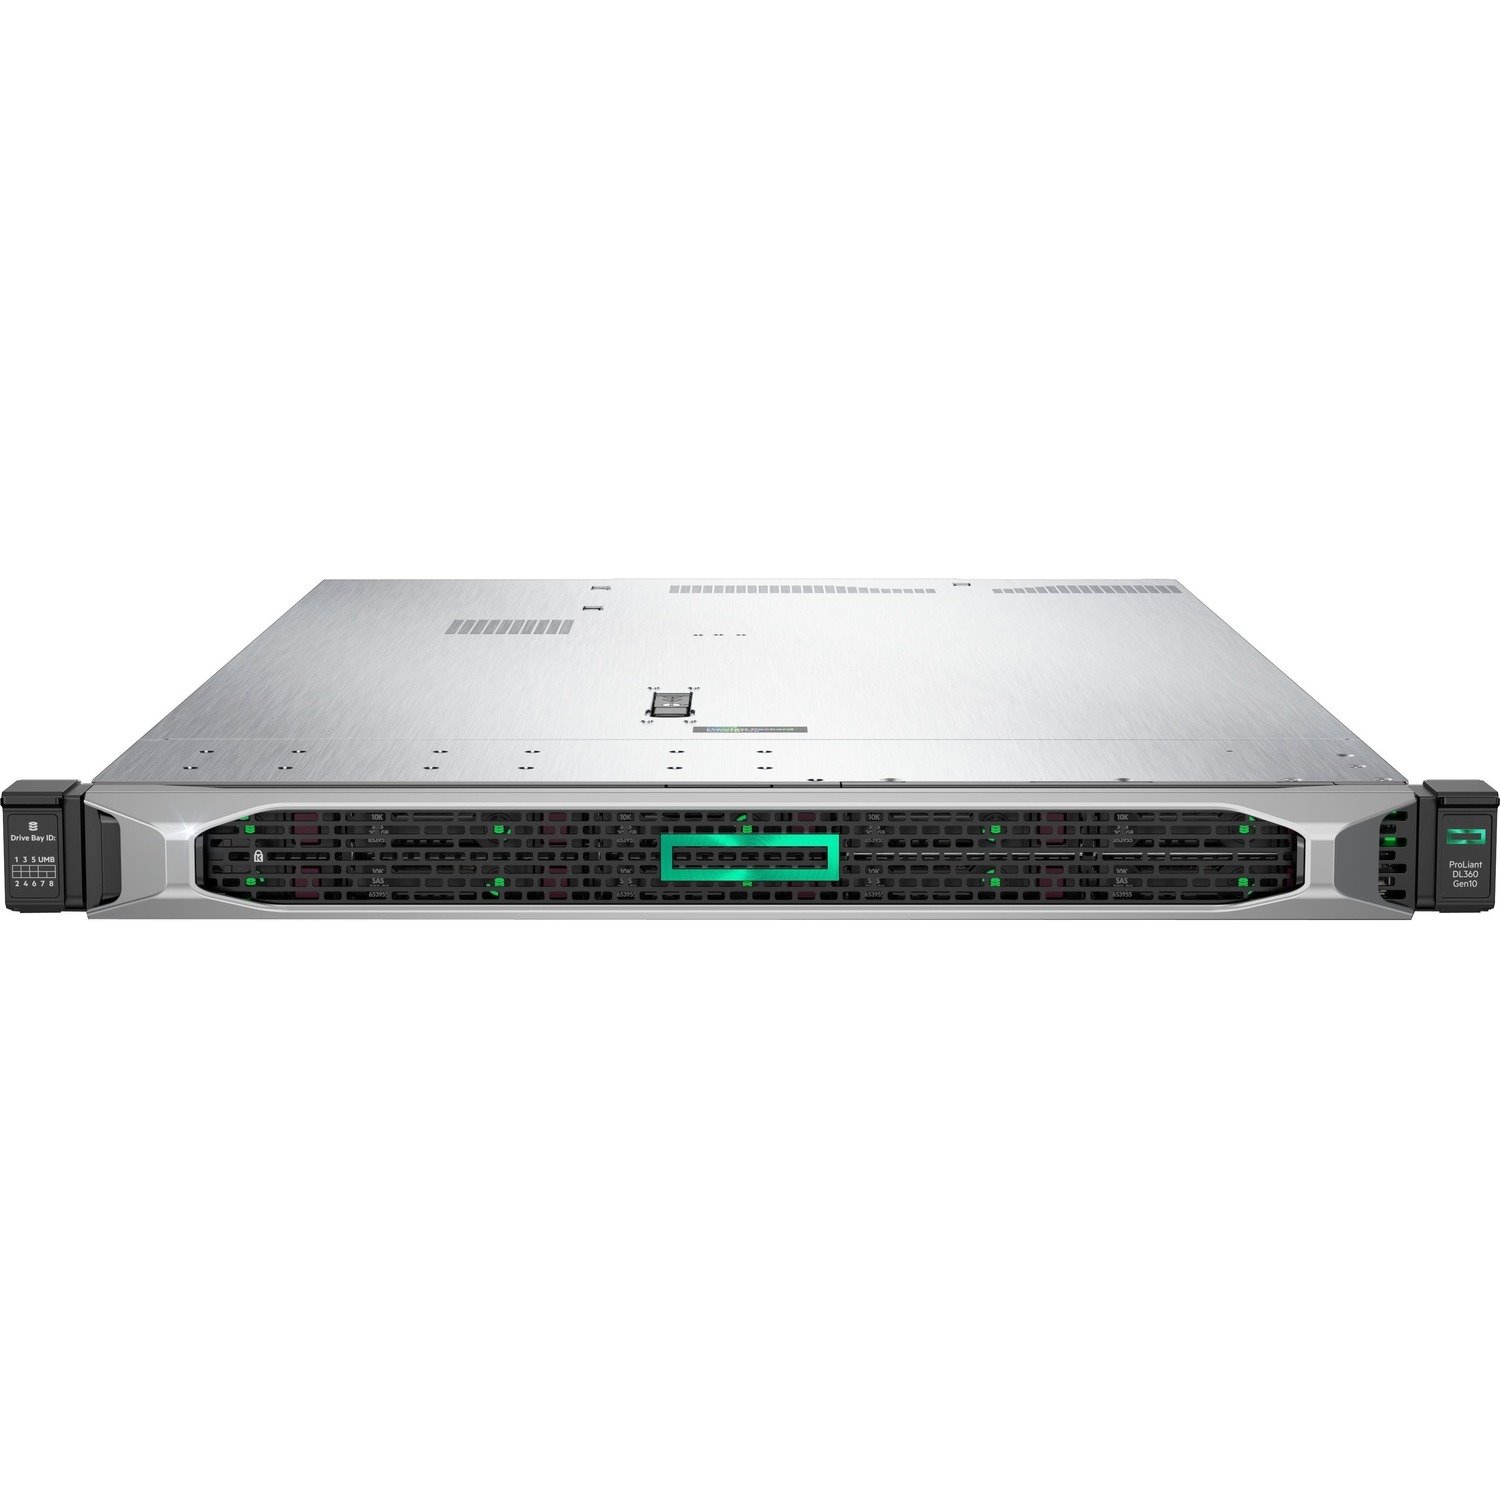 HPE ProLiant DL360 G10 1U Rack Server - 1 x Intel Xeon Gold 5218R 2.10 GHz - 32 GB RAM - Serial ATA Controller